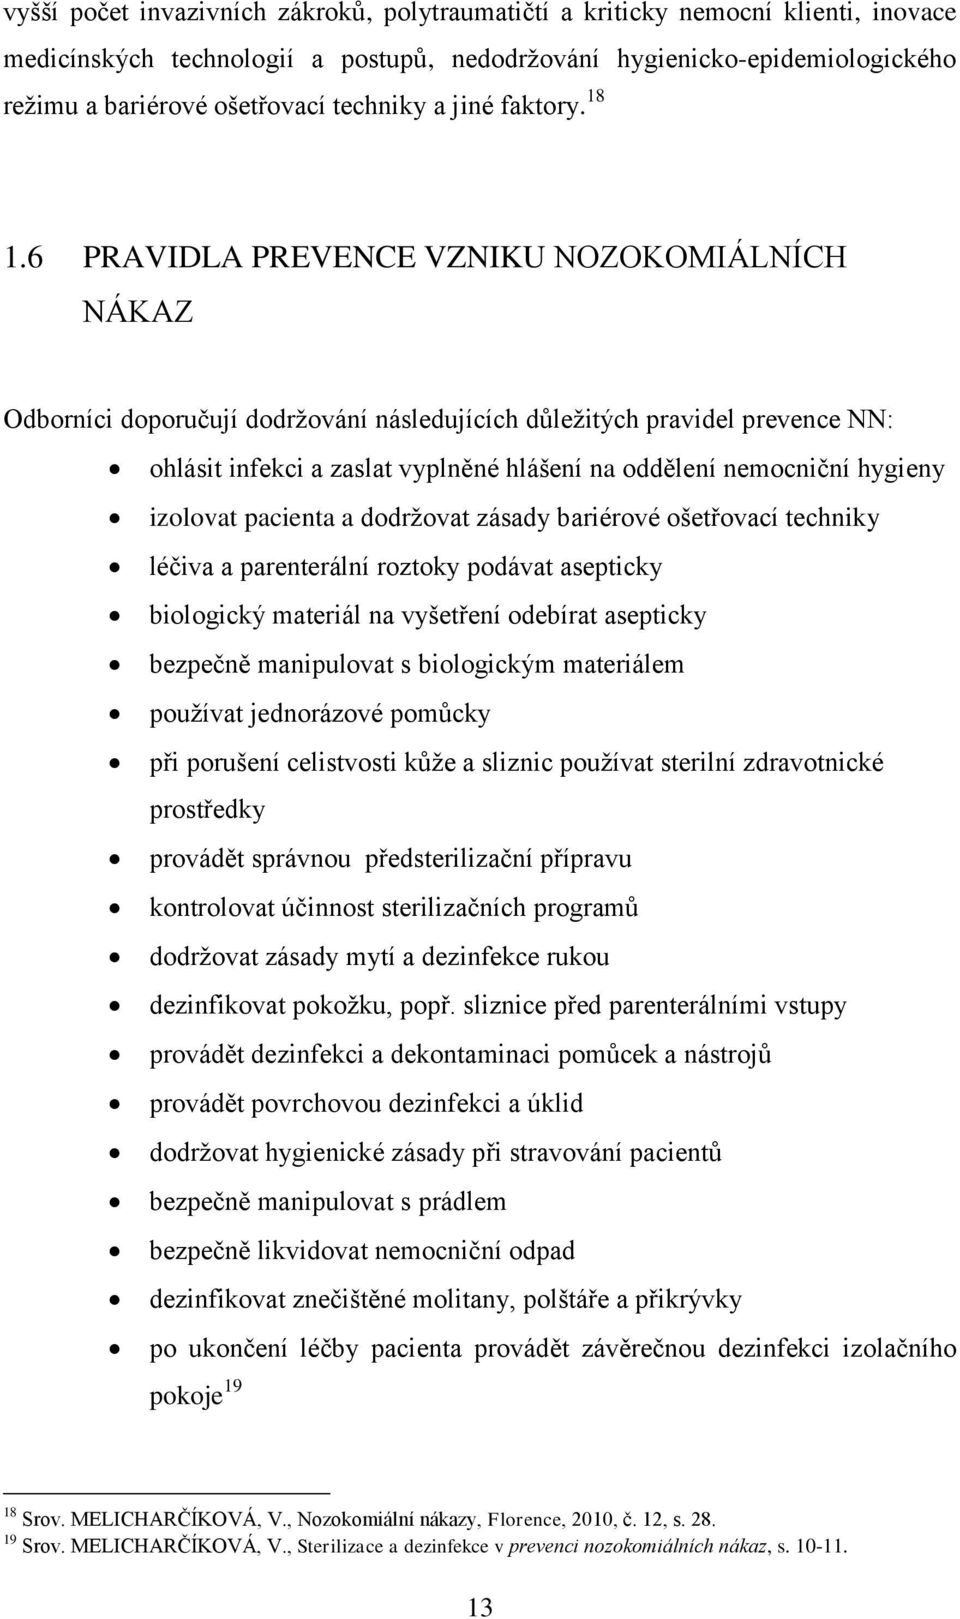 6 PRAVIDLA PREVENCE VZNIKU NOZOKOMIÁLNÍCH NÁKAZ Odborníci doporučují dodrţování následujících dŧleţitých pravidel prevence NN: ohlásit infekci a zaslat vyplněné hlášení na oddělení nemocniční hygieny